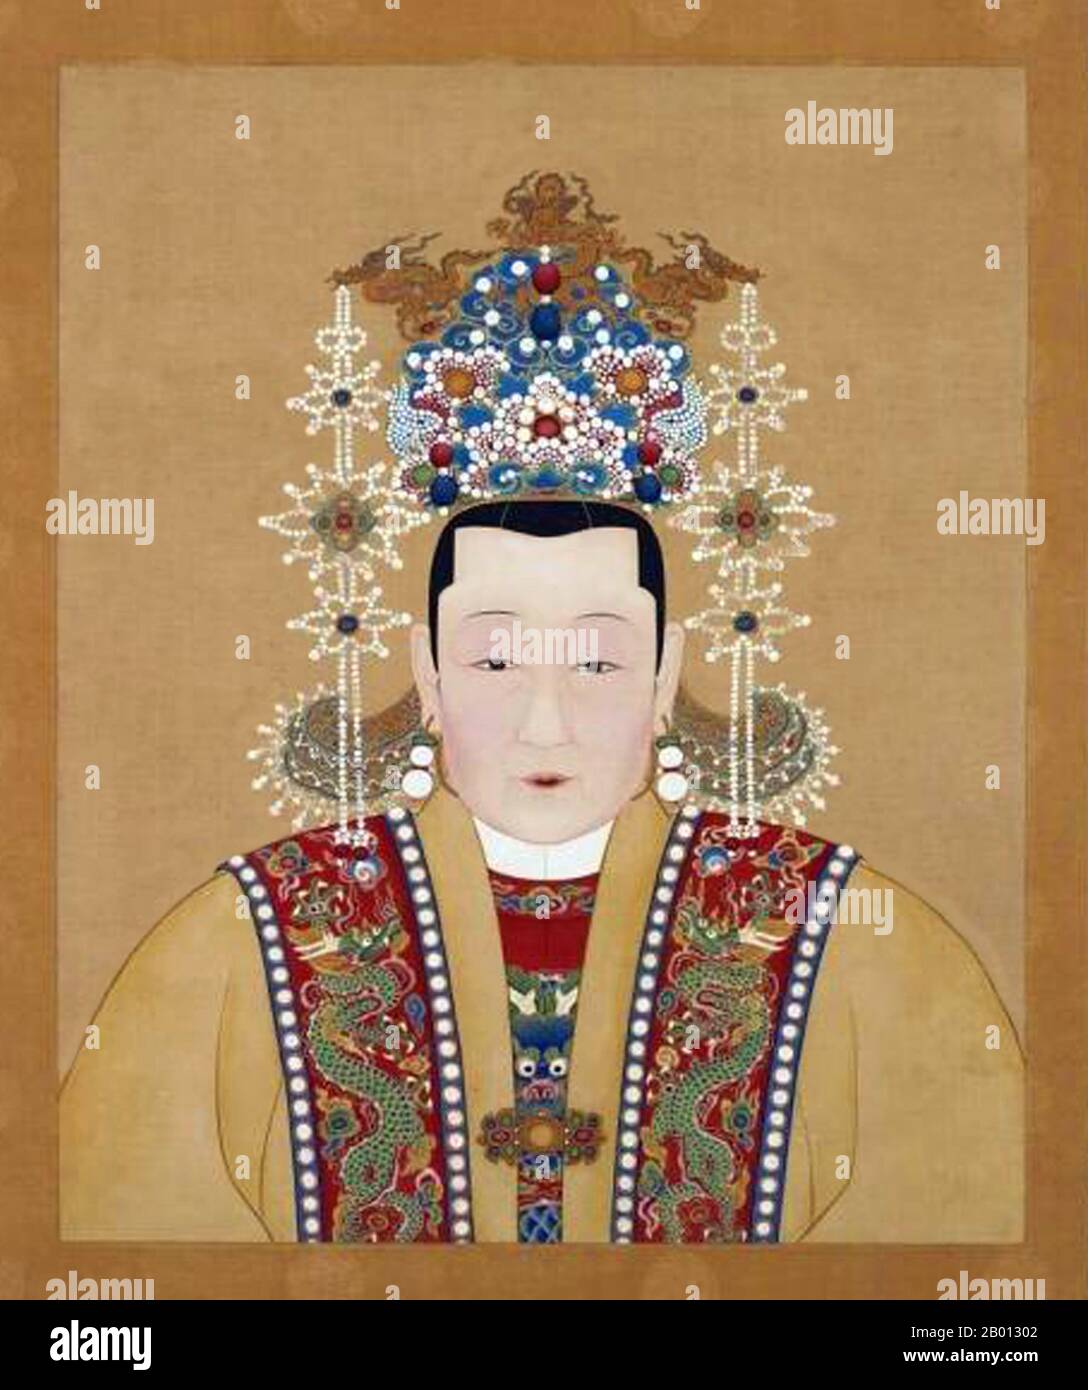 Chine : impératrice Xiao Zhang Rui (1426 - 26 juin 1468), consort du 6e empereur Ming Zhengtong (r. 1435-1449; 1457-1464). Peinture suspendue en rouleau, XVe-XVIIe siècle. L'impératrice Qian (1426-1468), officiellement l'impératrice Xiaozhangrui, était le consort de l'empereur Zhengtong de la dynastie Ming. Son mari a mené une campagne désastreuse contre les Mongols qui ont vu des centaines de milliers de soldats Ming tués et lui-même capturés. Zhengtong se voit ensuite attribuer le statut d'empereur à la retraite alors que son demi-frère devint l'empereur Jingtai. Banque D'Images